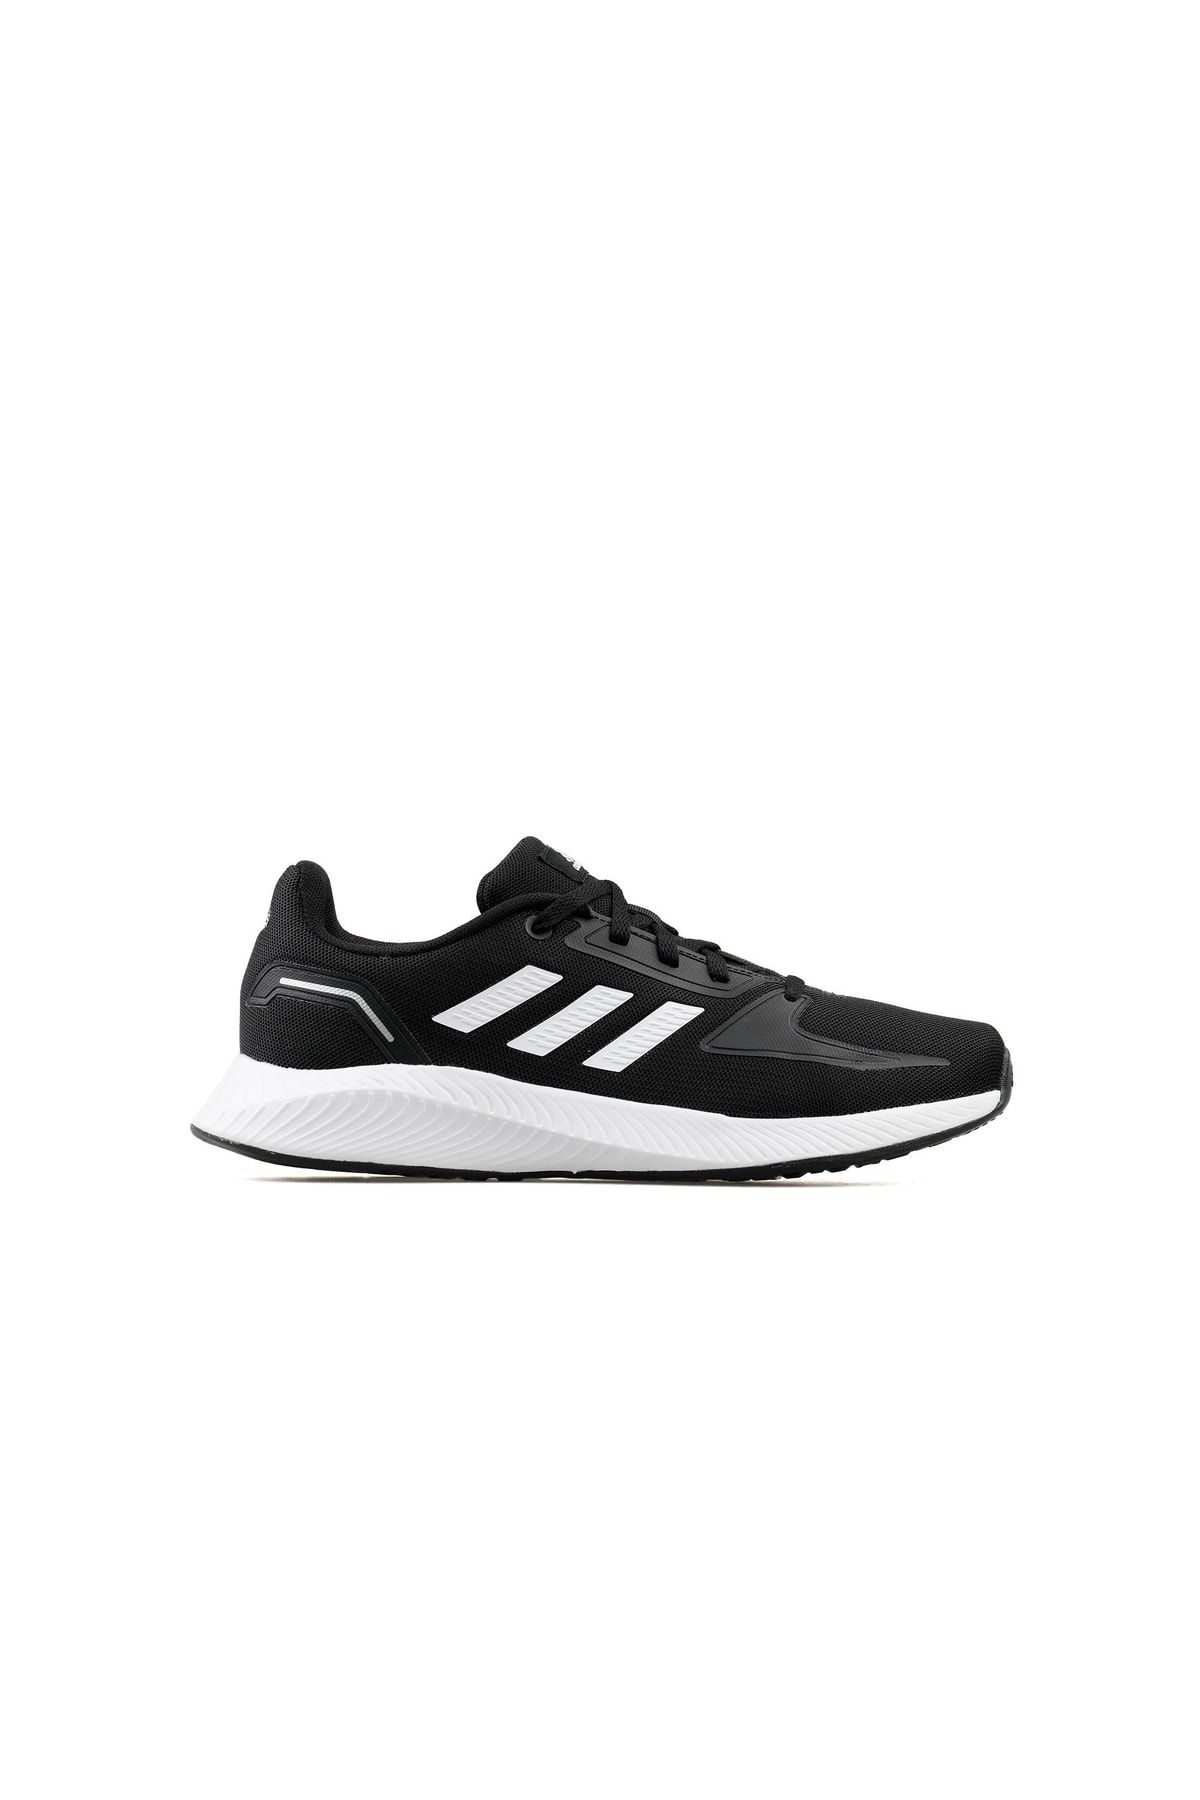 adidas Runfalcon 2.0 Erkek Koşu Ayakkabısı Fy5943 Siyah